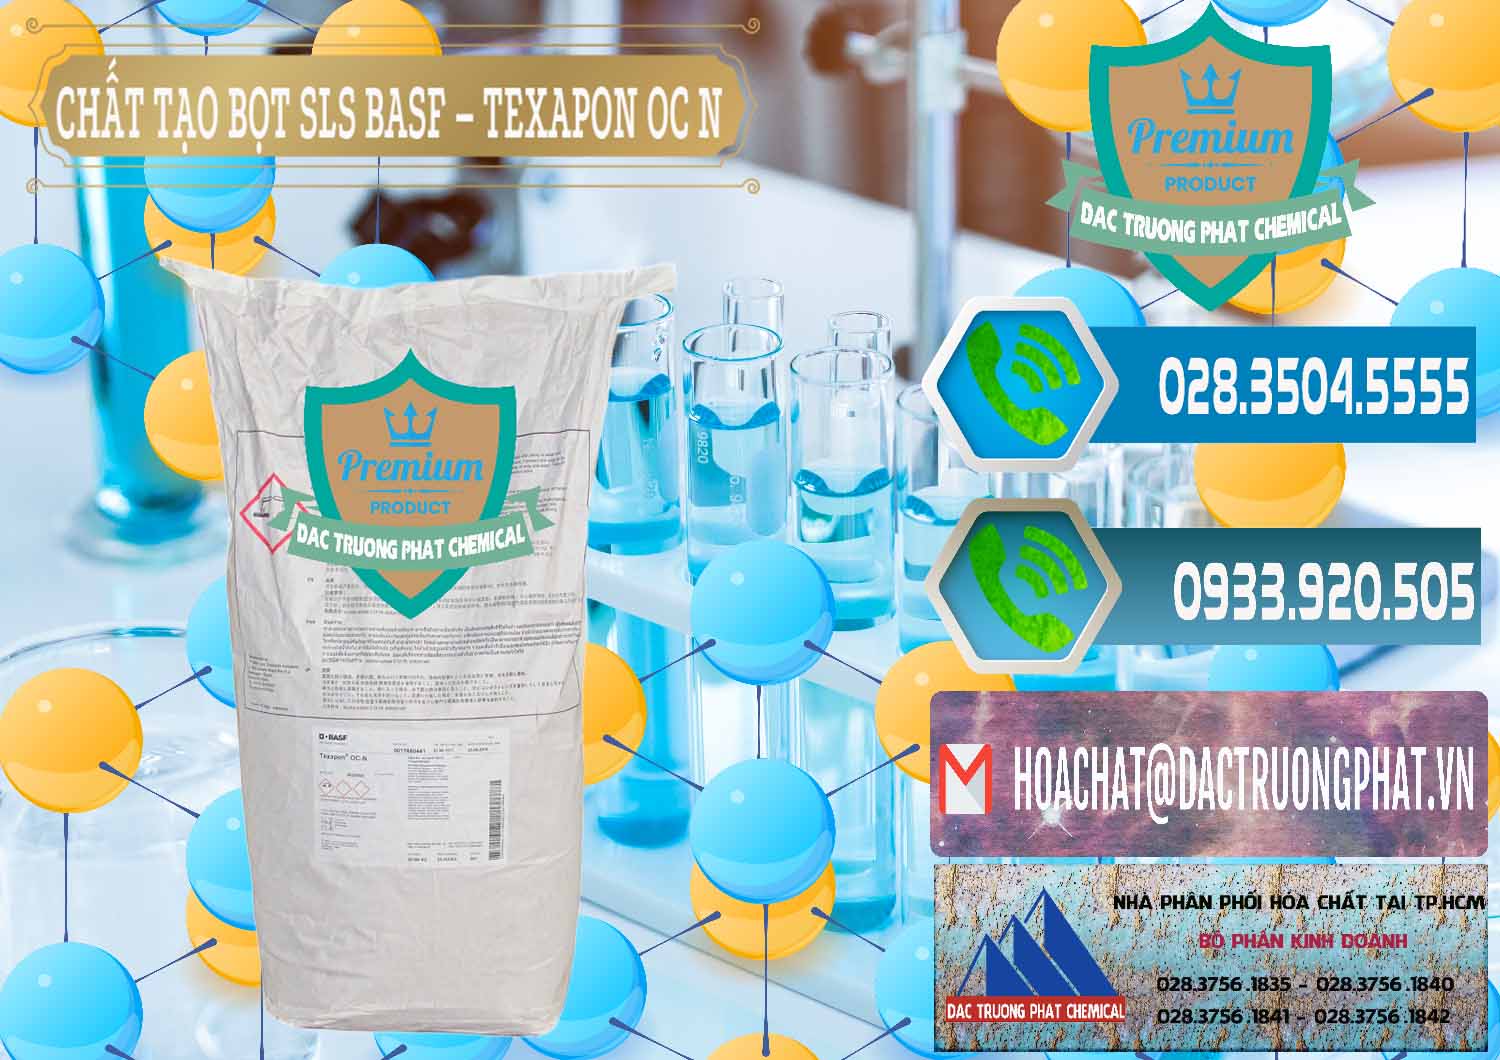 Nơi nhập khẩu - bán Chất Tạo Bọt SLS - Sodium Lauryl Sulfate BASF Texapon OC N - 0049 - Nơi chuyên kinh doanh ( phân phối ) hóa chất tại TP.HCM - congtyhoachat.net